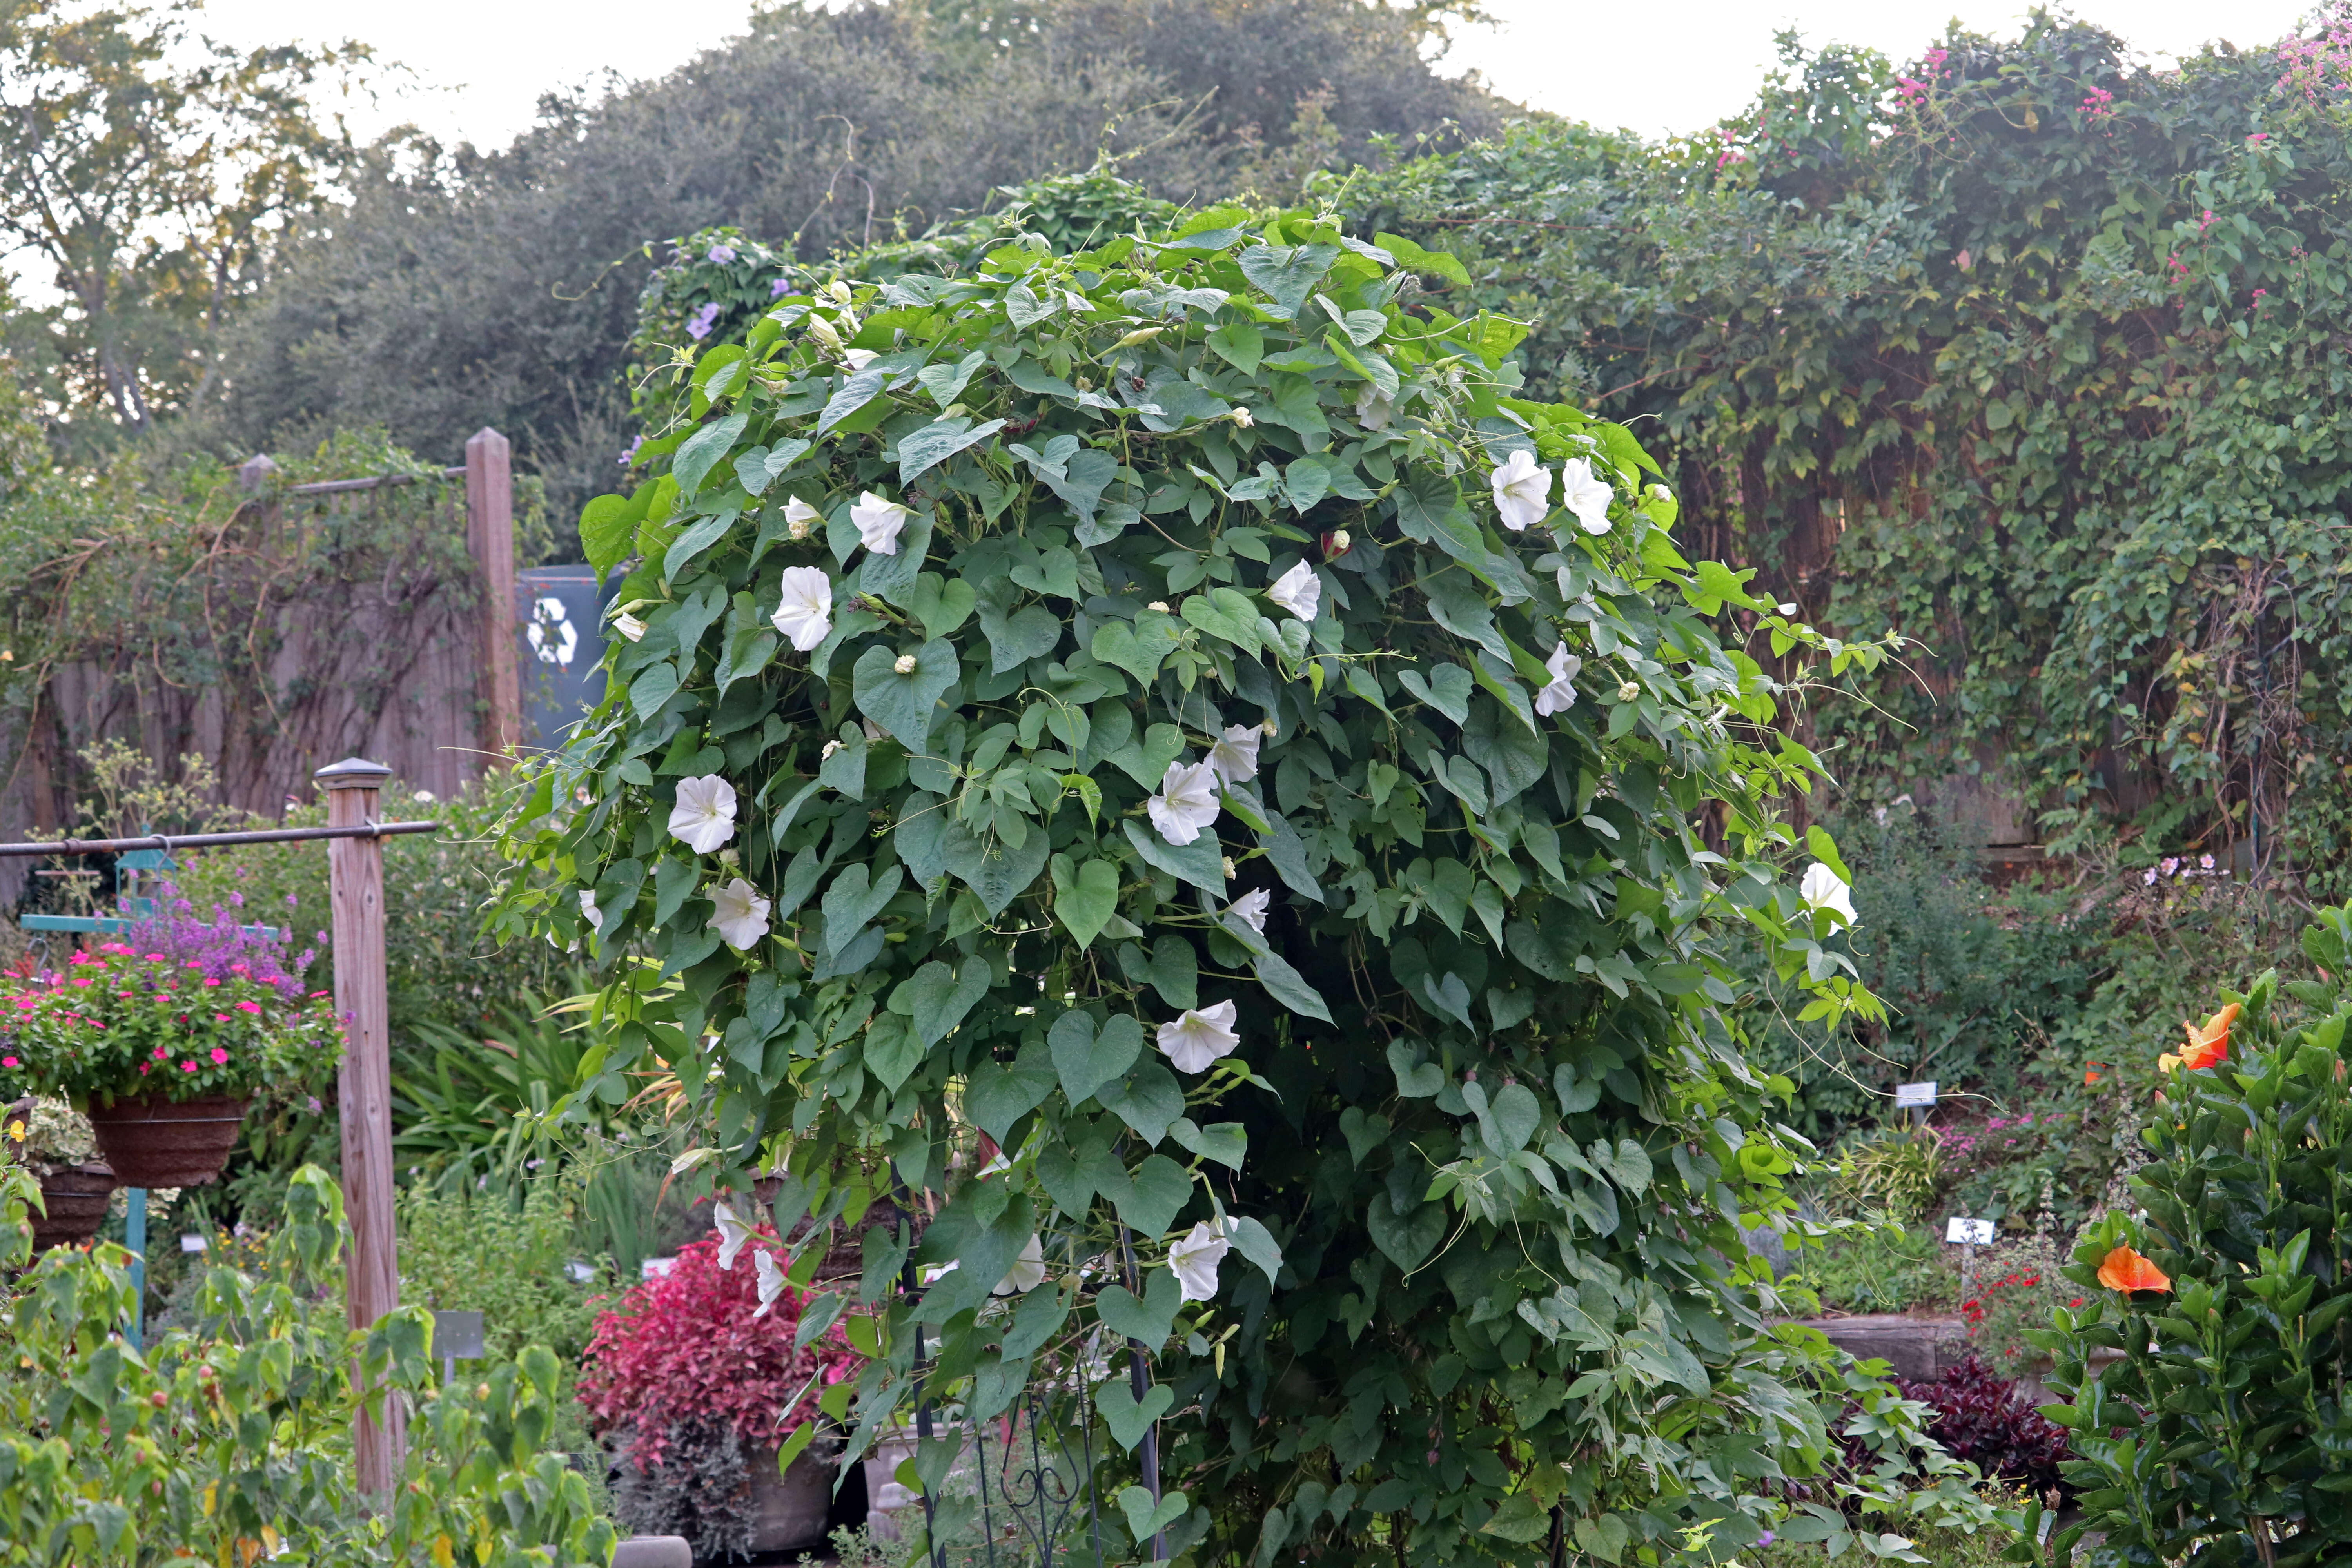 Image of Moonflower or moon vine